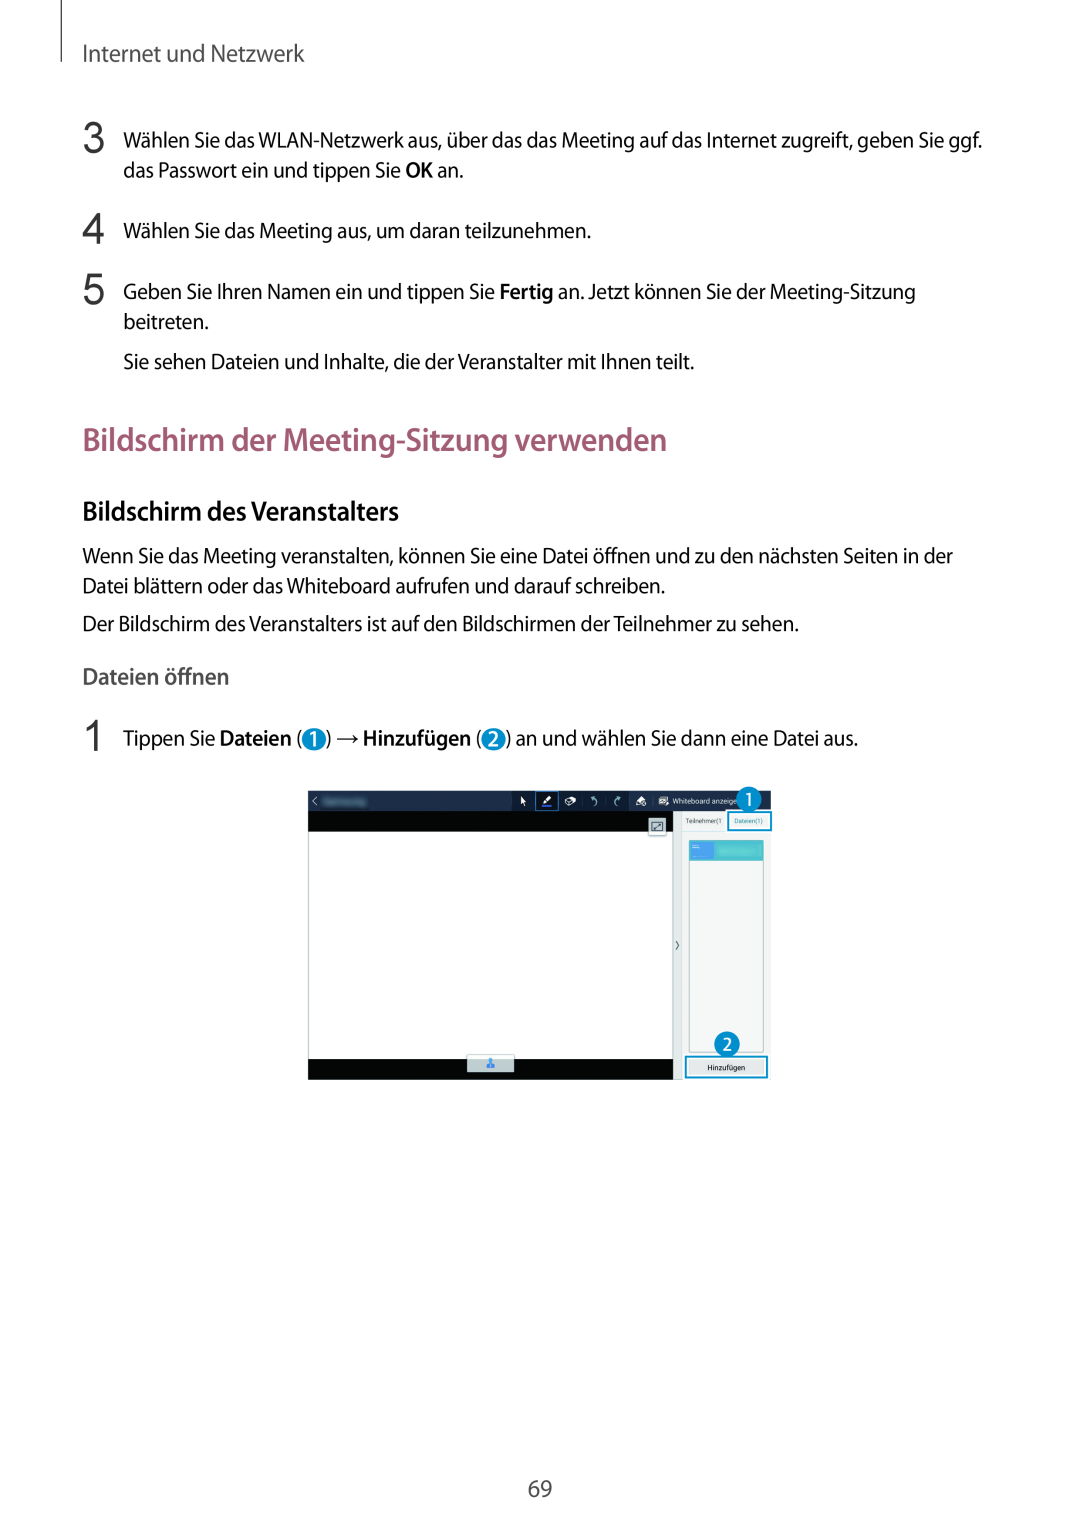 Samsung SM-P9000ZKADBT manual Bildschirm der Meeting-Sitzung verwenden, Bildschirm des Veranstalters, Dateien öffnen 